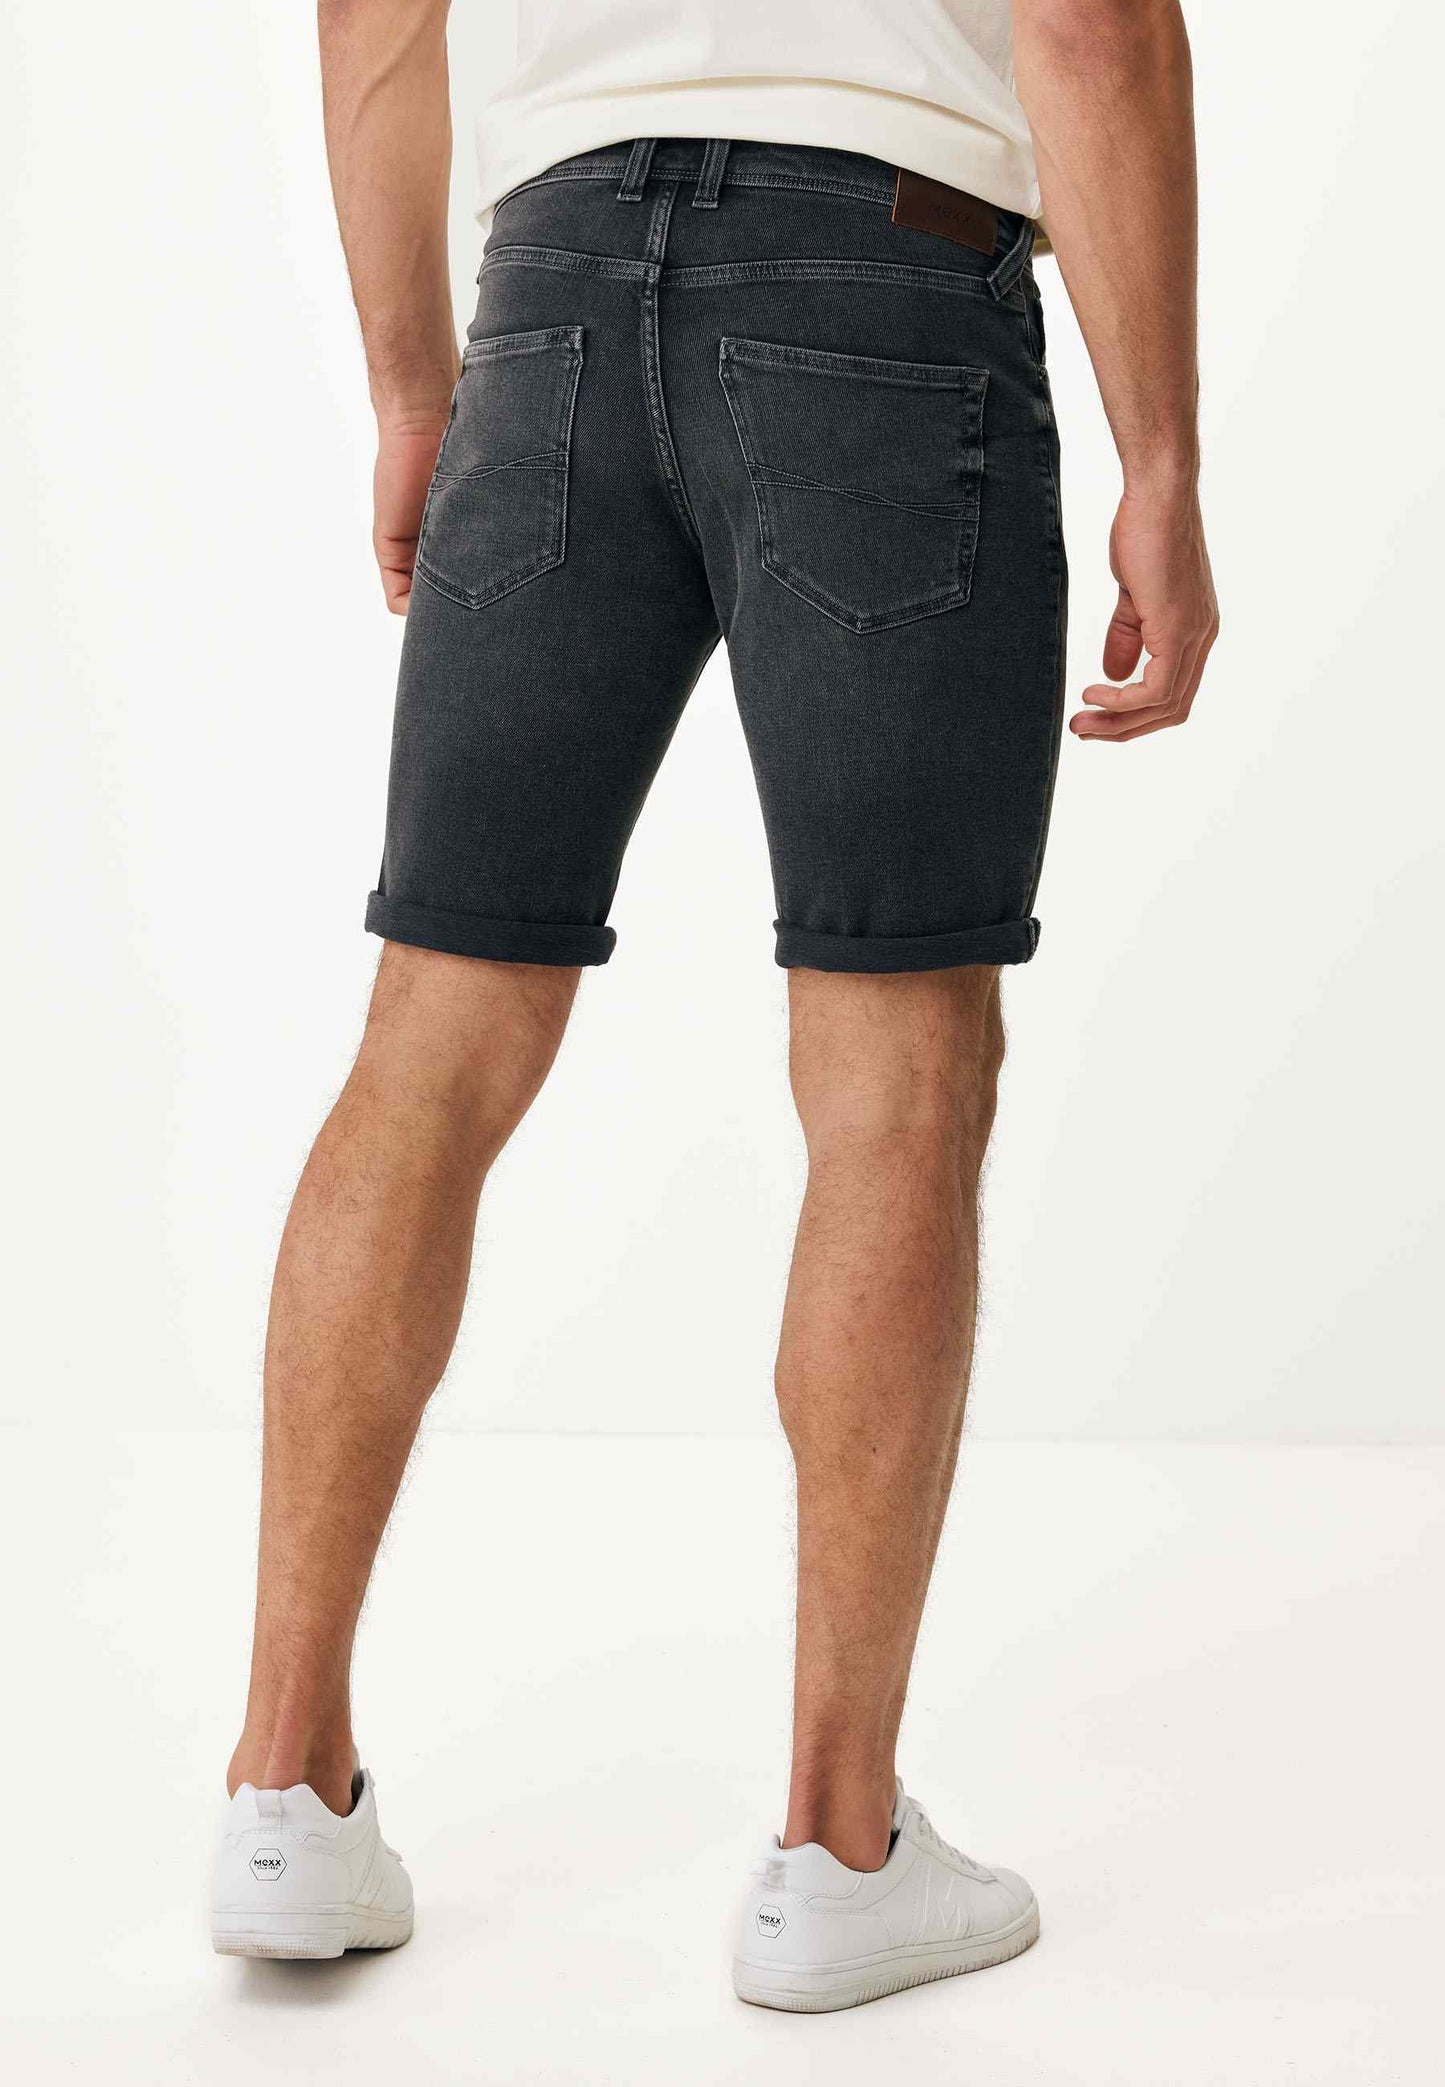 Regular Men's Short Jeans